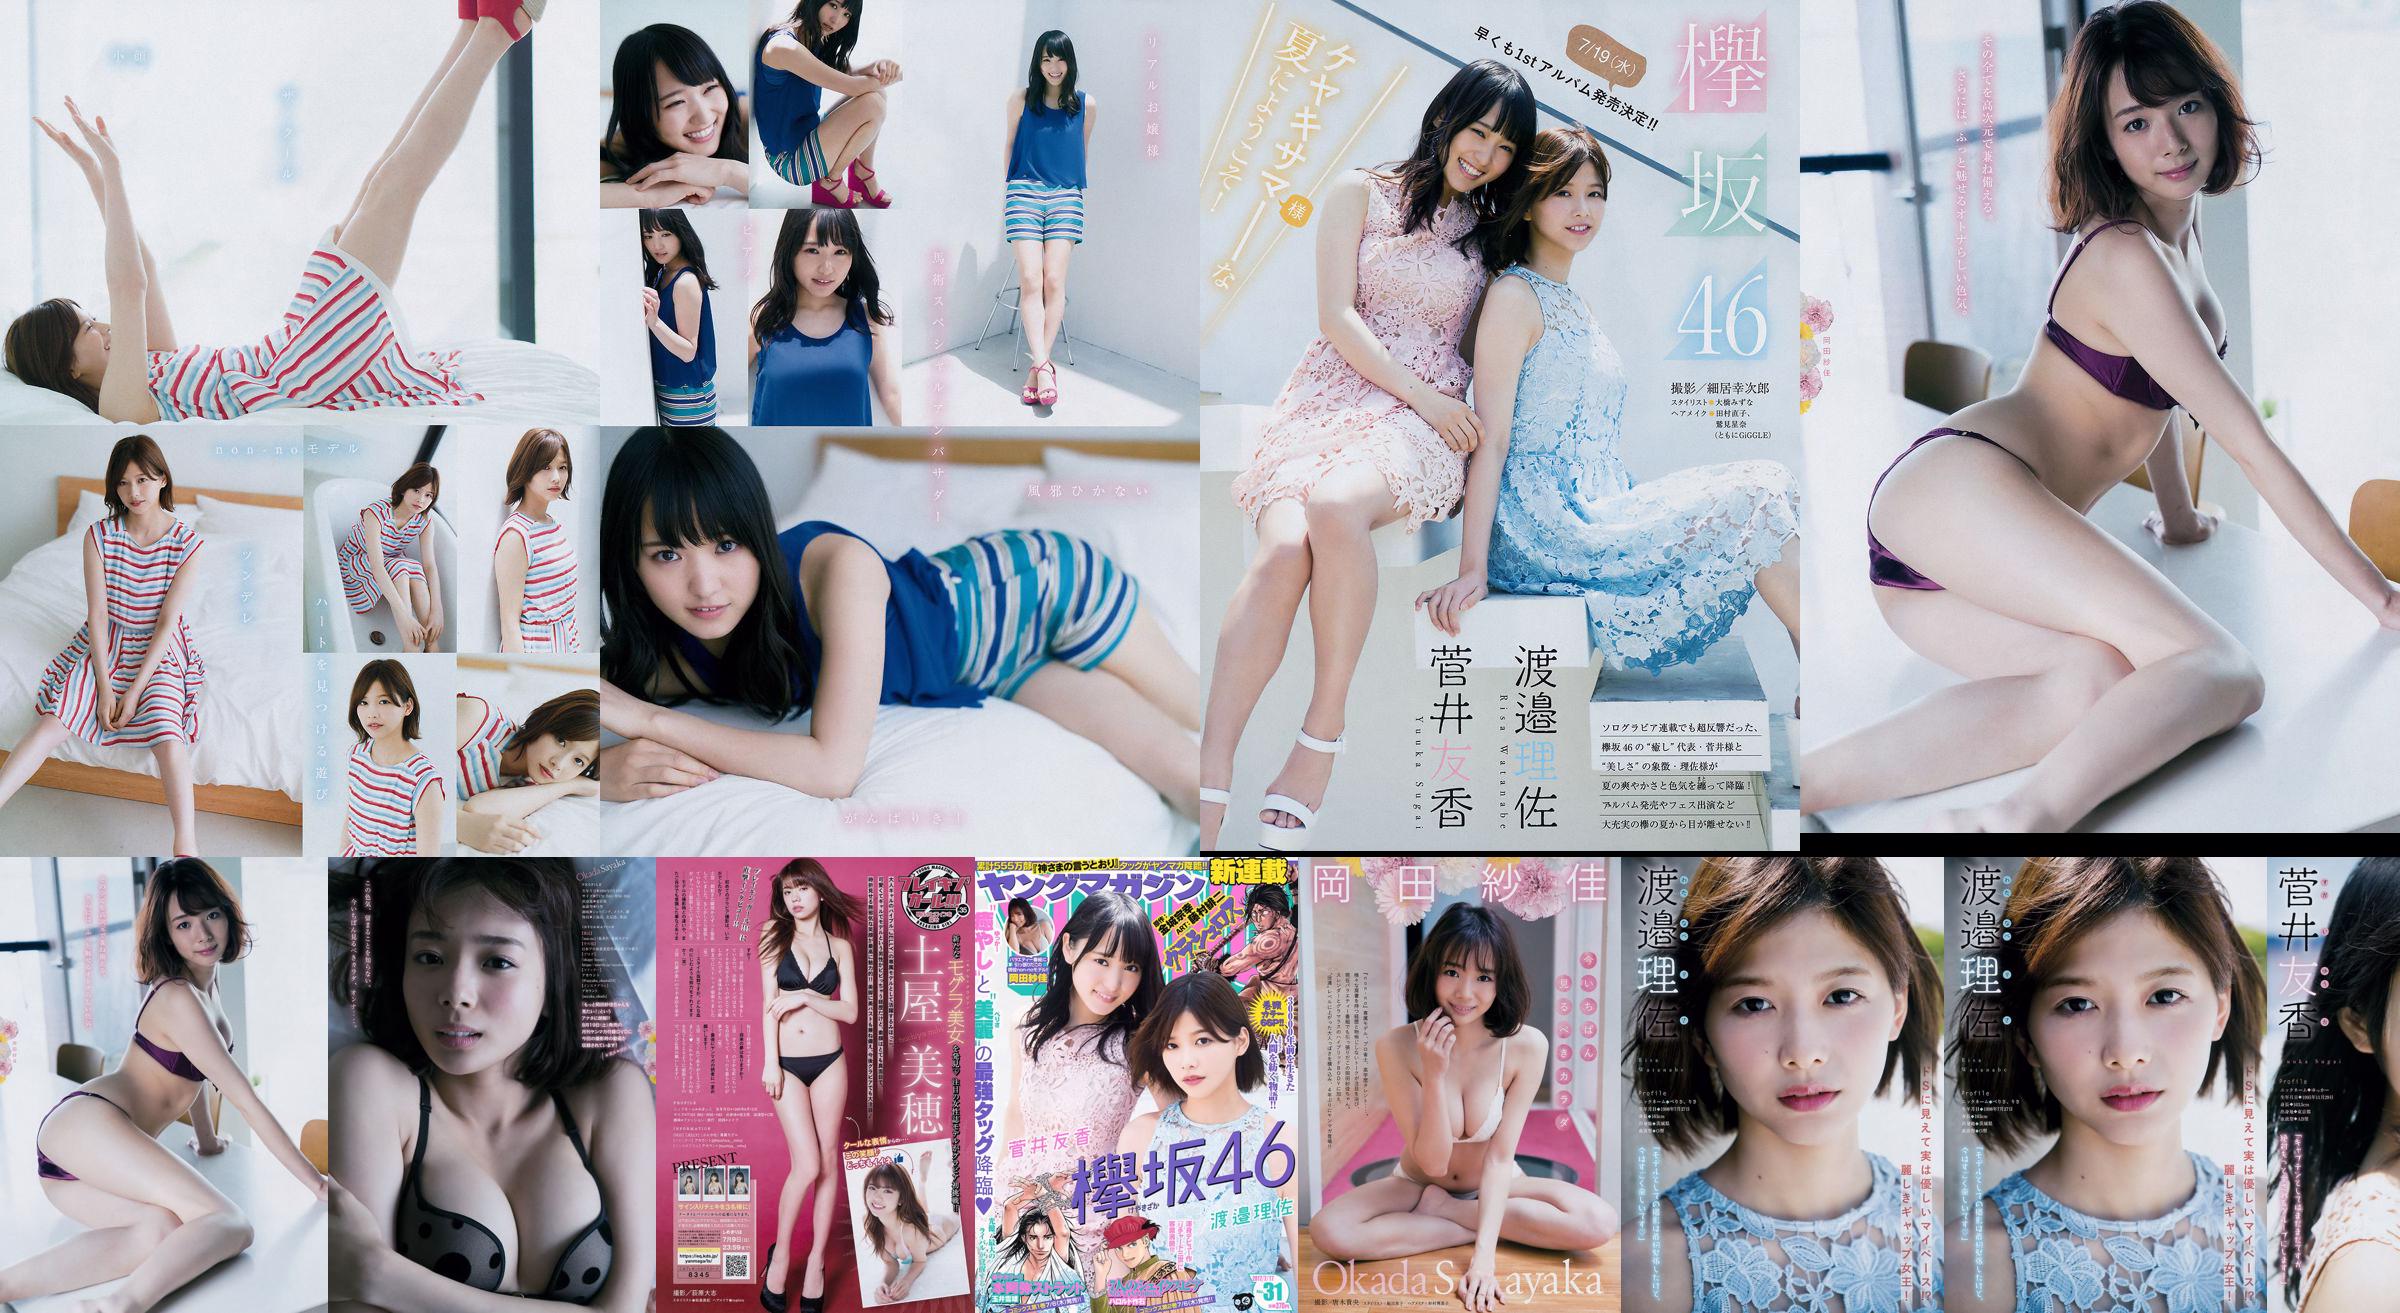 [Young Magazine] Watanabe Risa, Sugai Yuka, Okada Saika 2017 No.31 Photo Magazine No.81ba6d Pagina 2